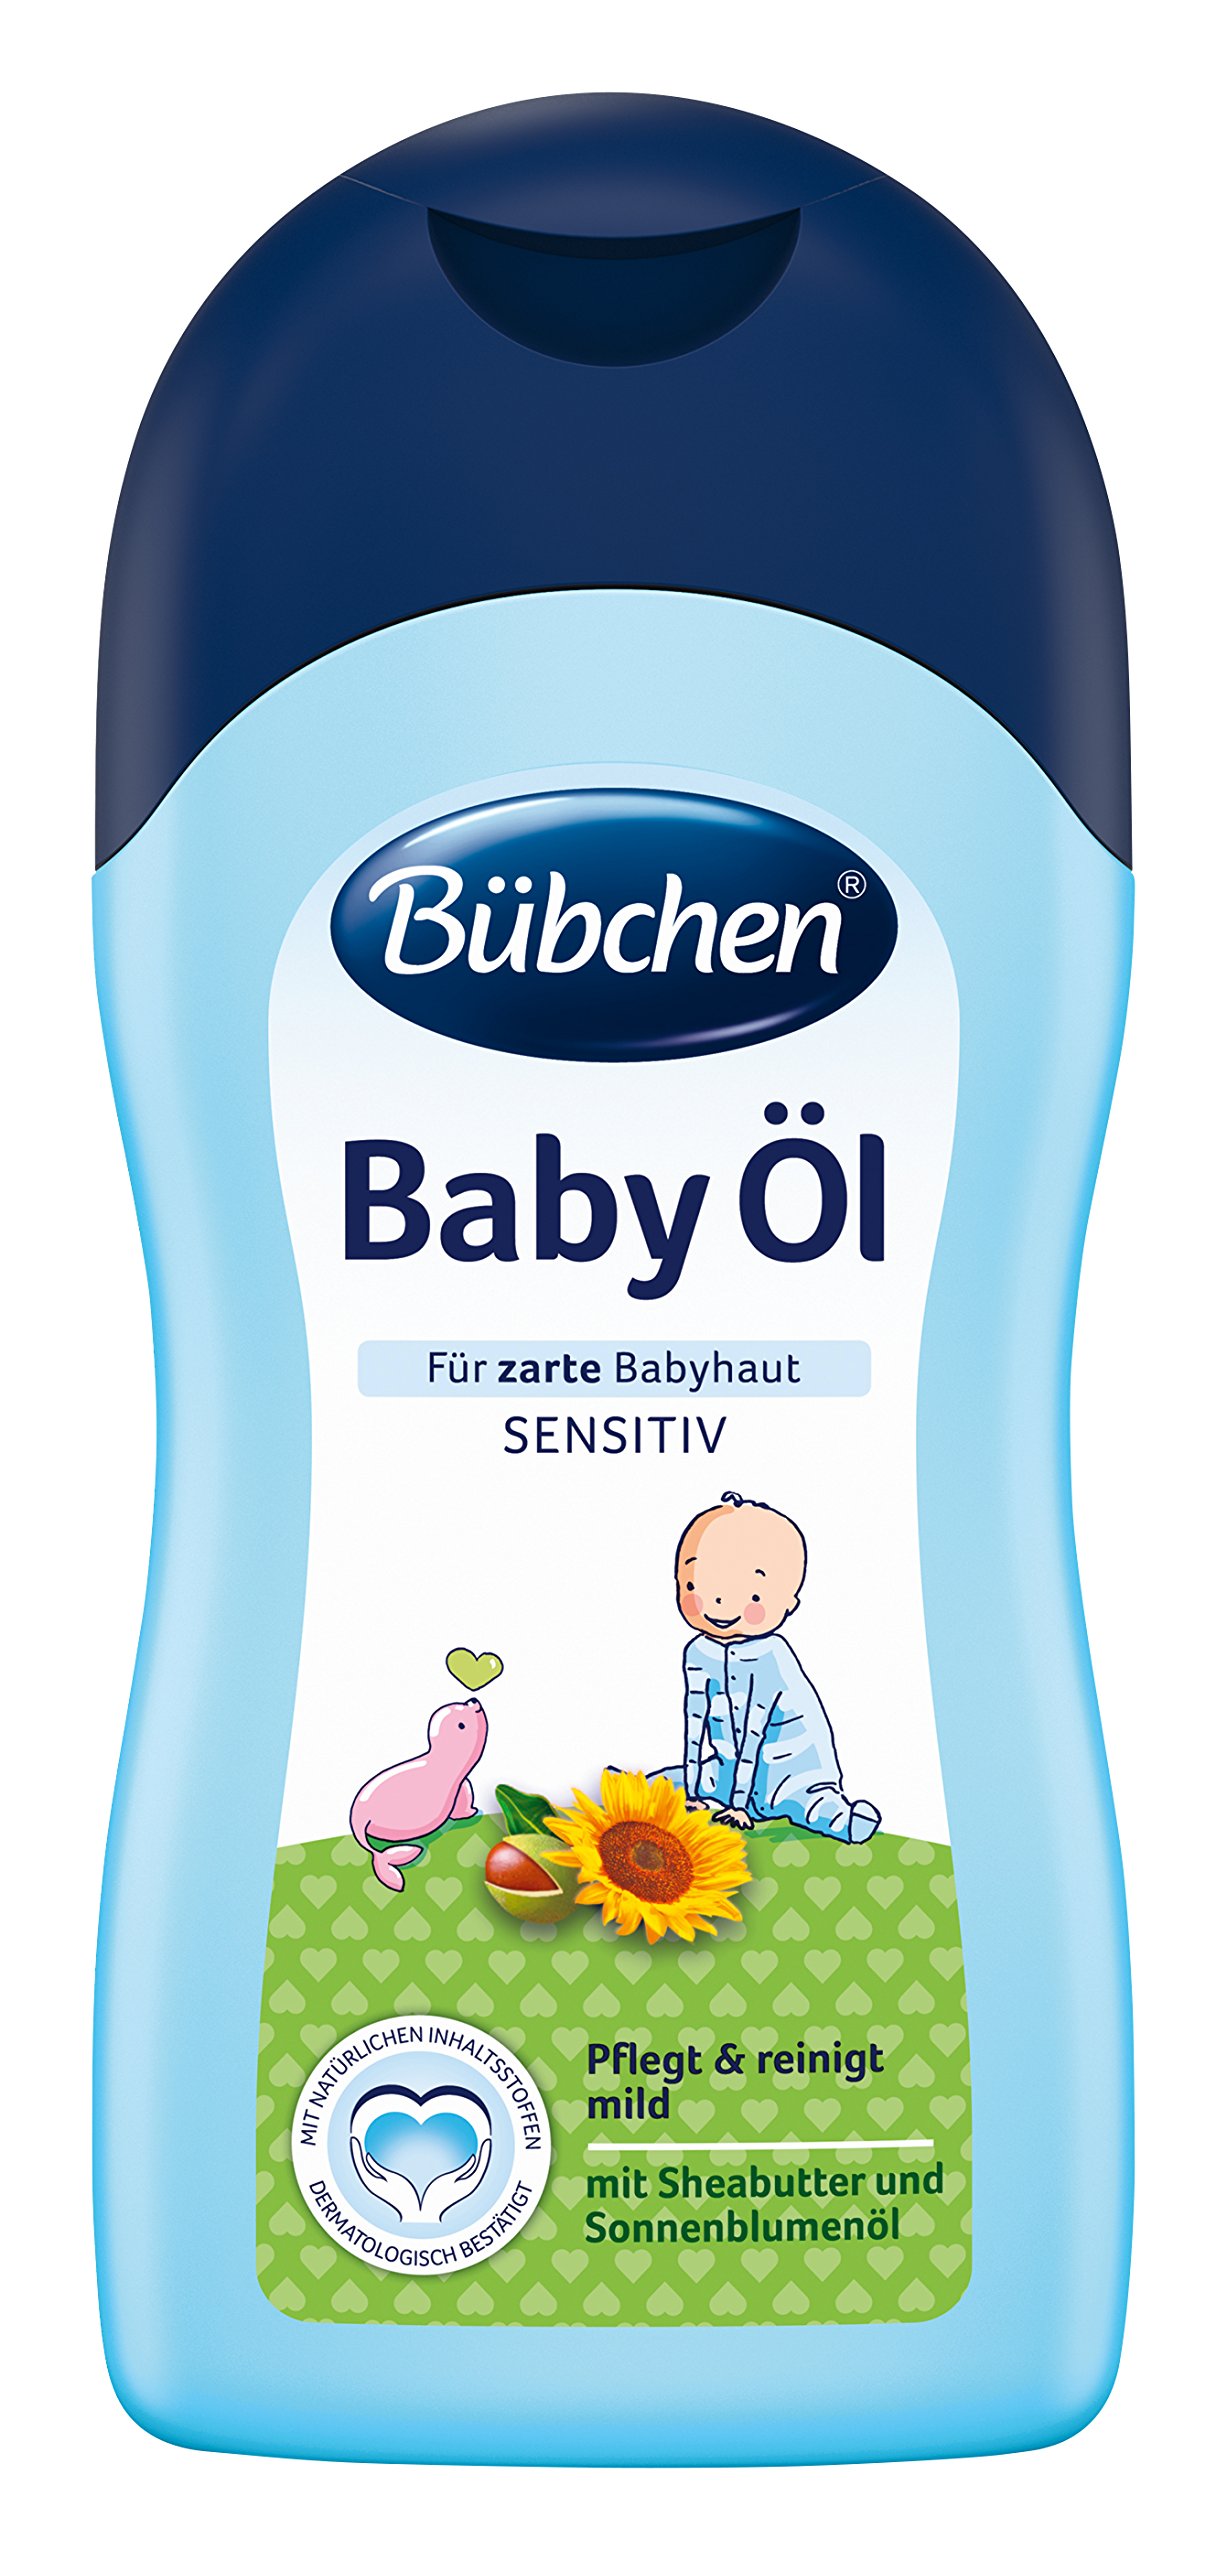 Dầu chăm sóc da cho bé Bubchen Baby Öl